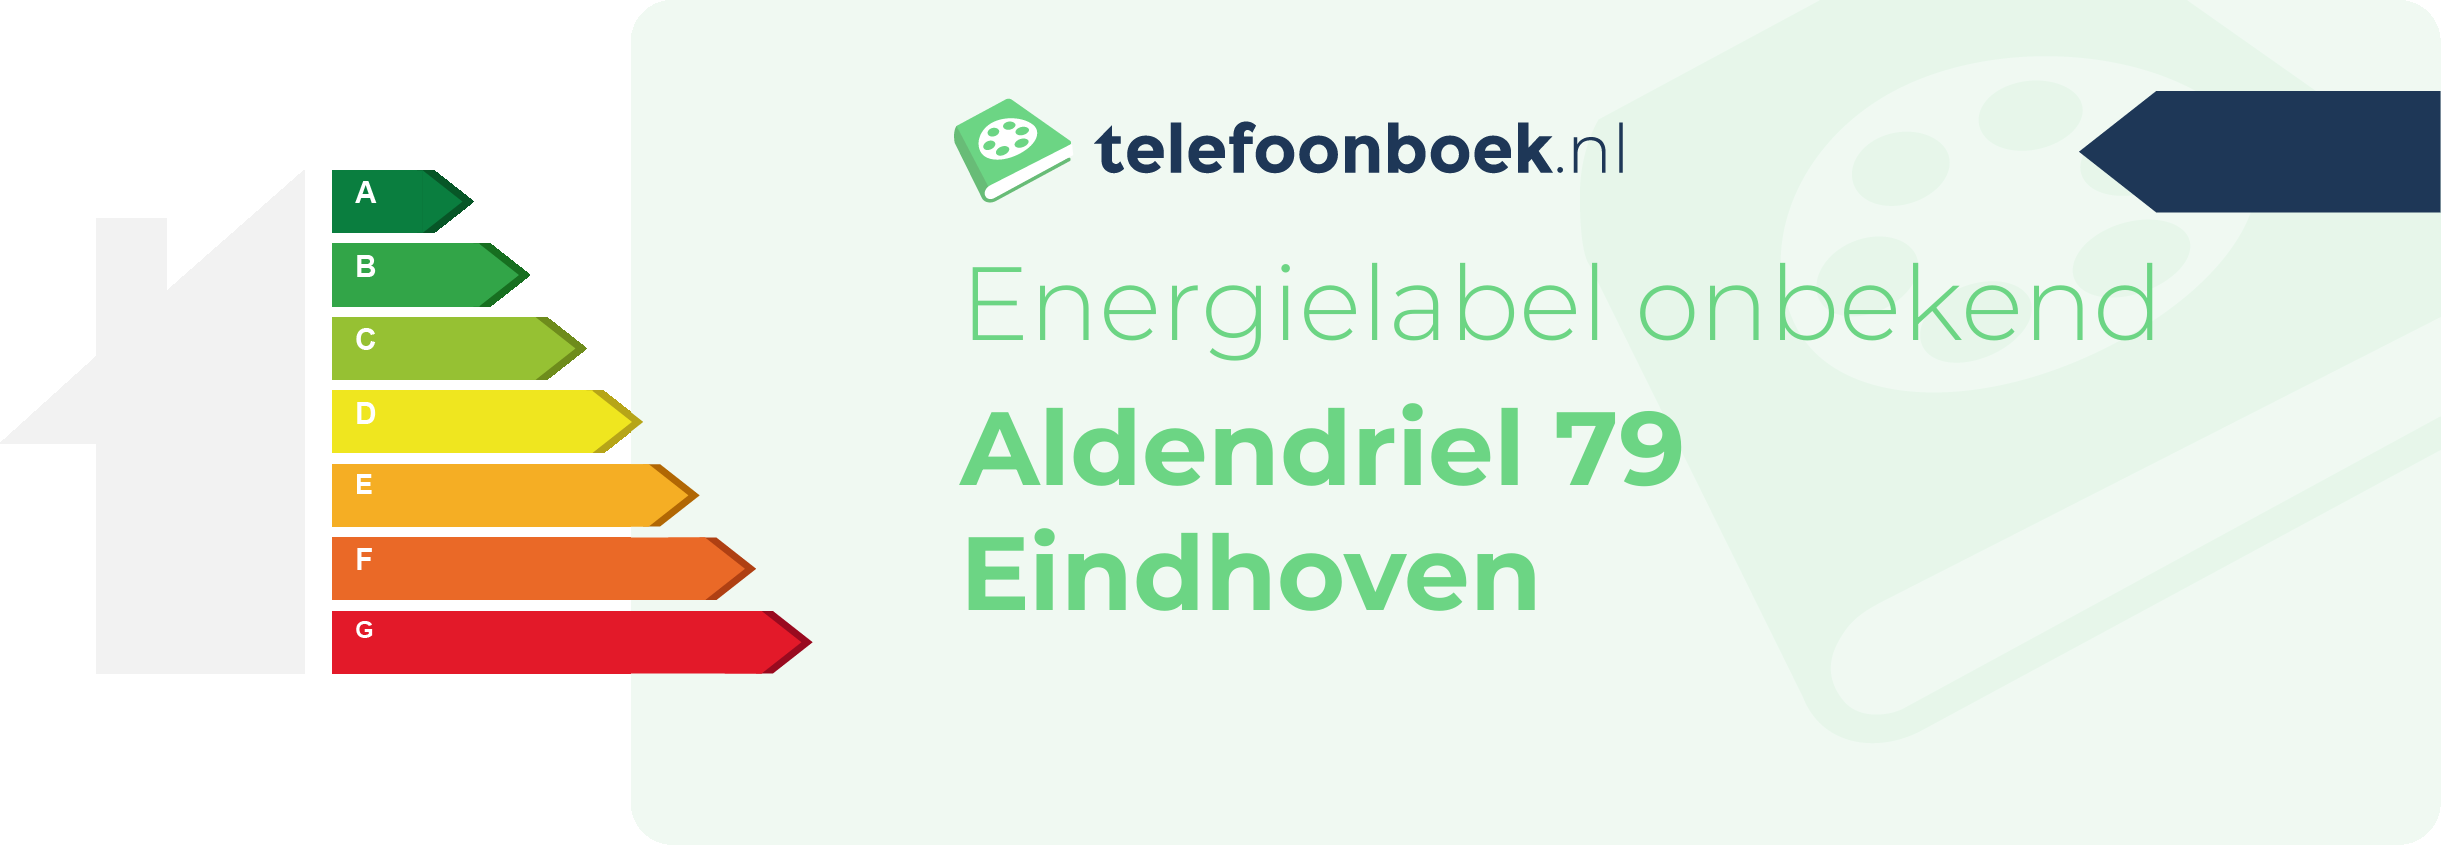 Energielabel Aldendriel 79 Eindhoven